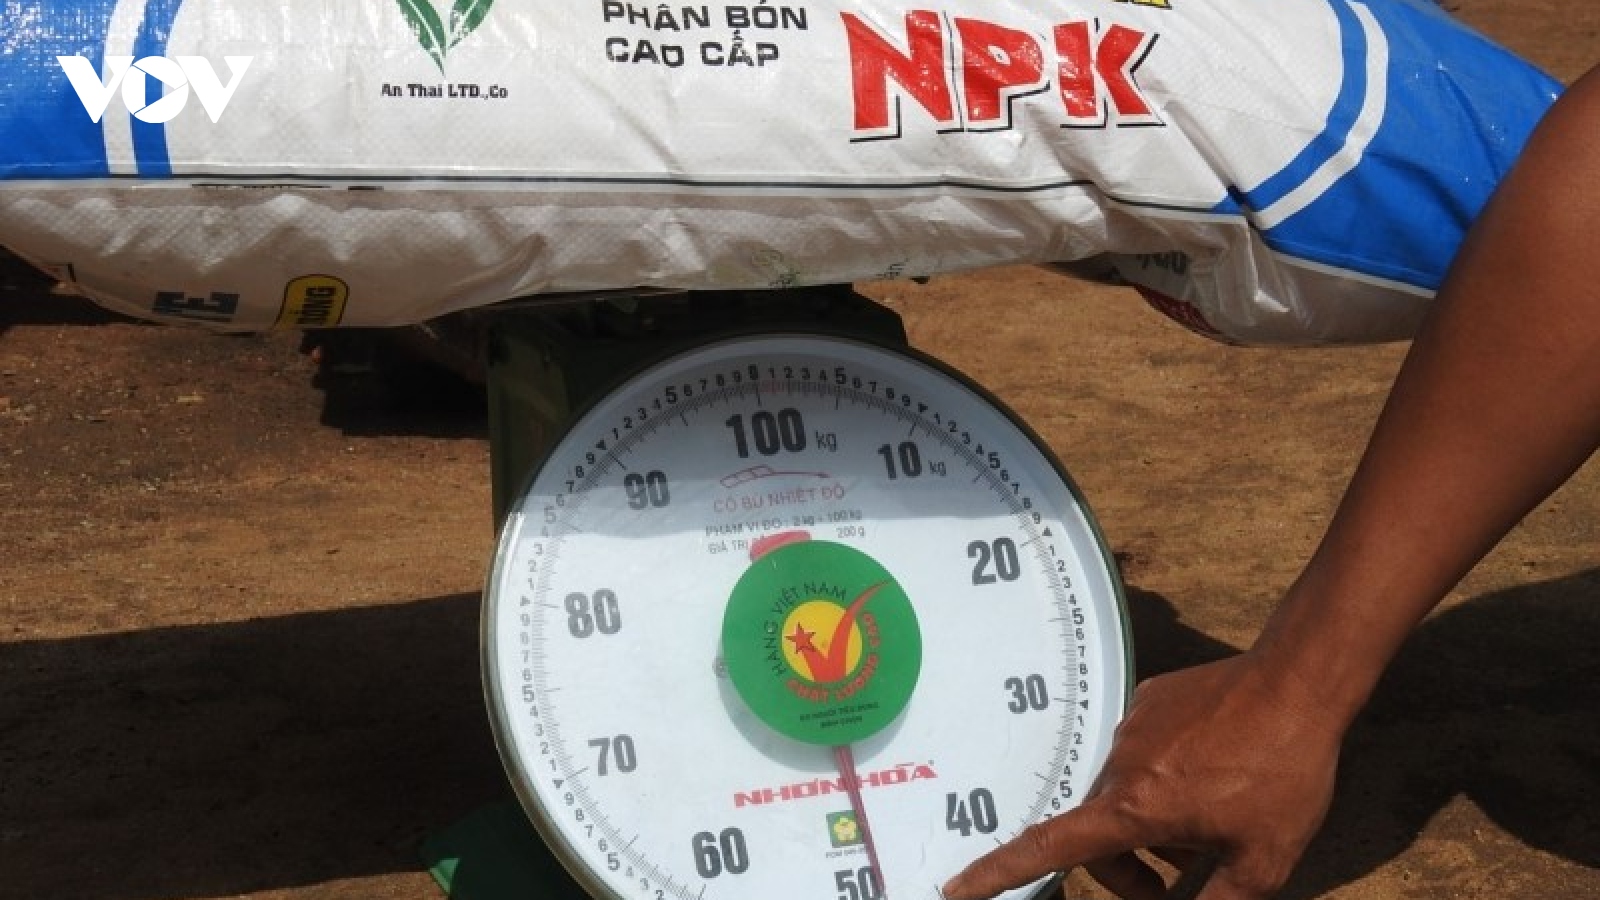 Phát hiện hàng loạt bao phân bón cao cấp sinh học An Thái NPK thiếu trọng lượng